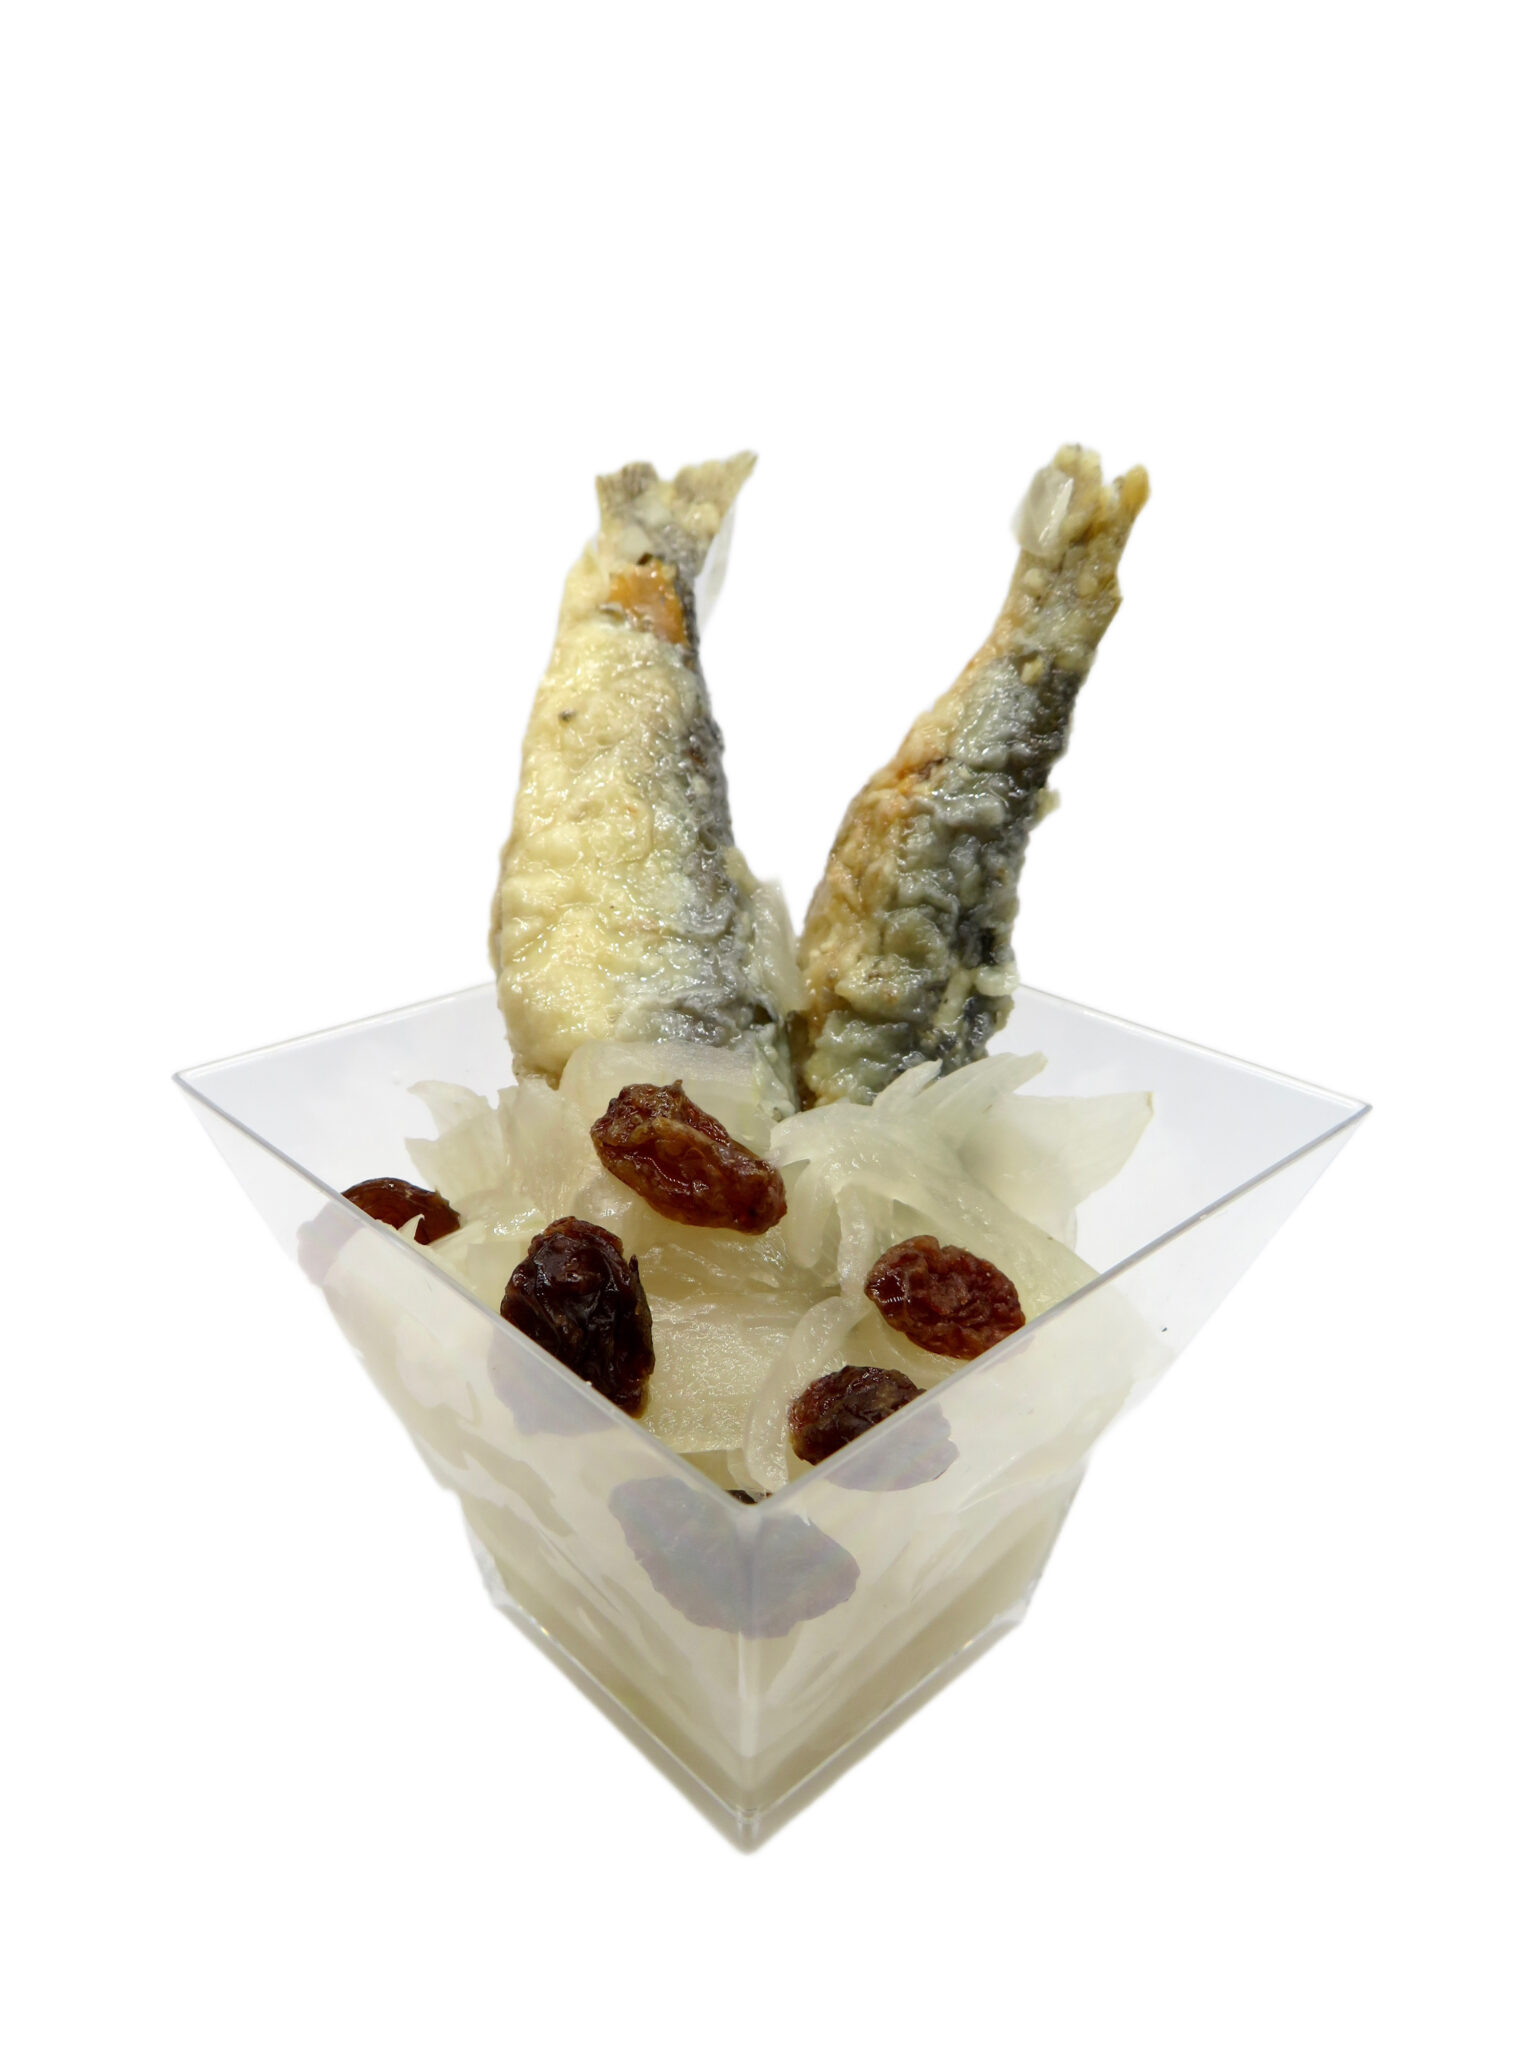 Servizio Catering Treviso | Locanda Ponte Dante | Finger food banchetto sarde in saor